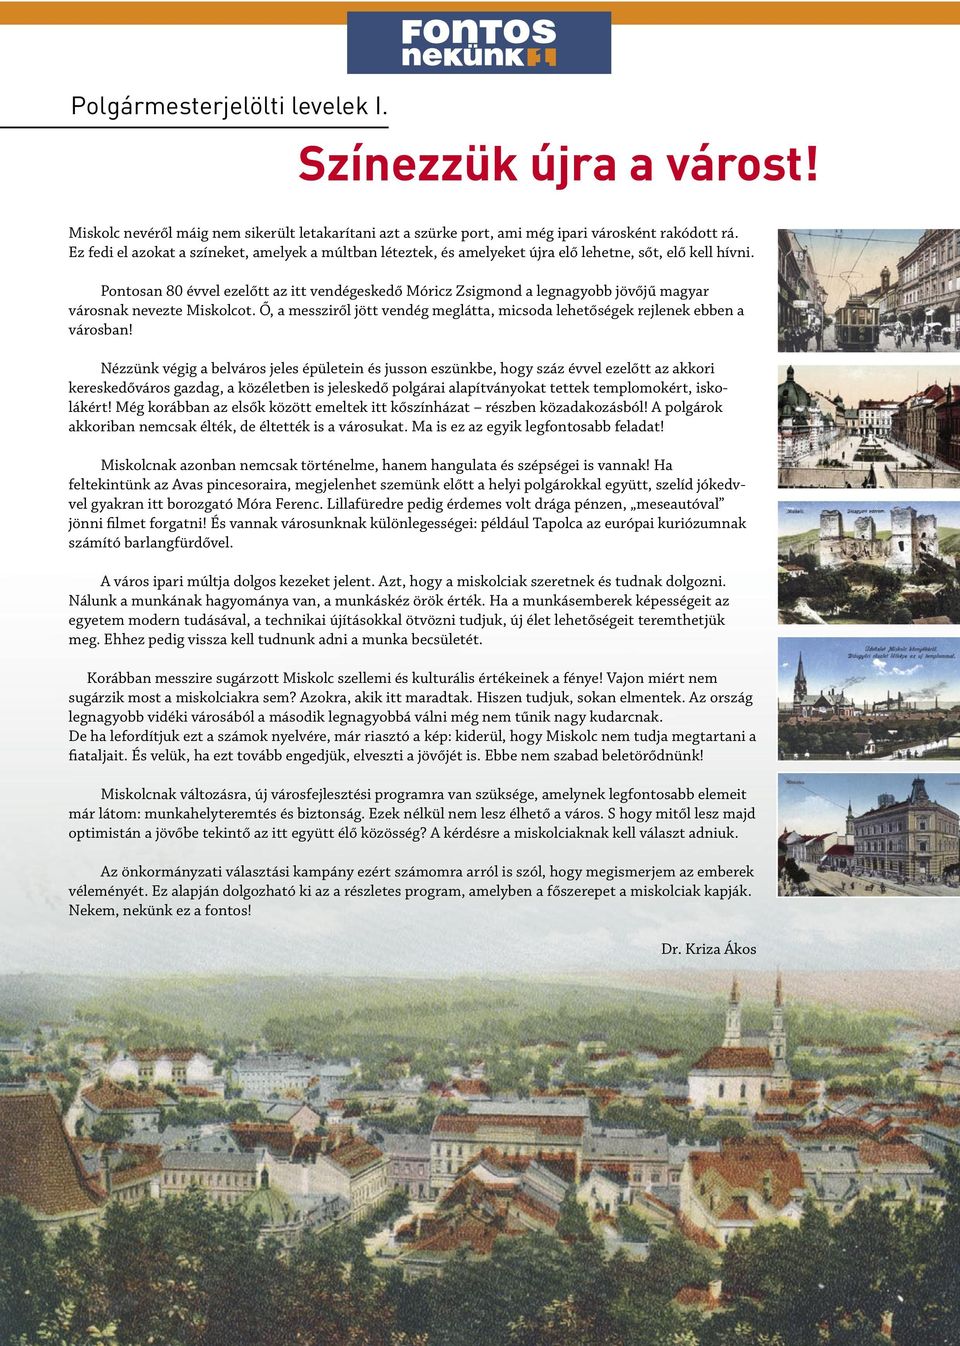 Pontosan 80 évvel ezelőtt az itt vendégeskedő Móricz Zsigmond a legnagyobb jövőjű magyar városnak nevezte Miskolcot. Ő, a messziről jött vendég meglátta, micsoda lehetőségek rejlenek ebben a városban!